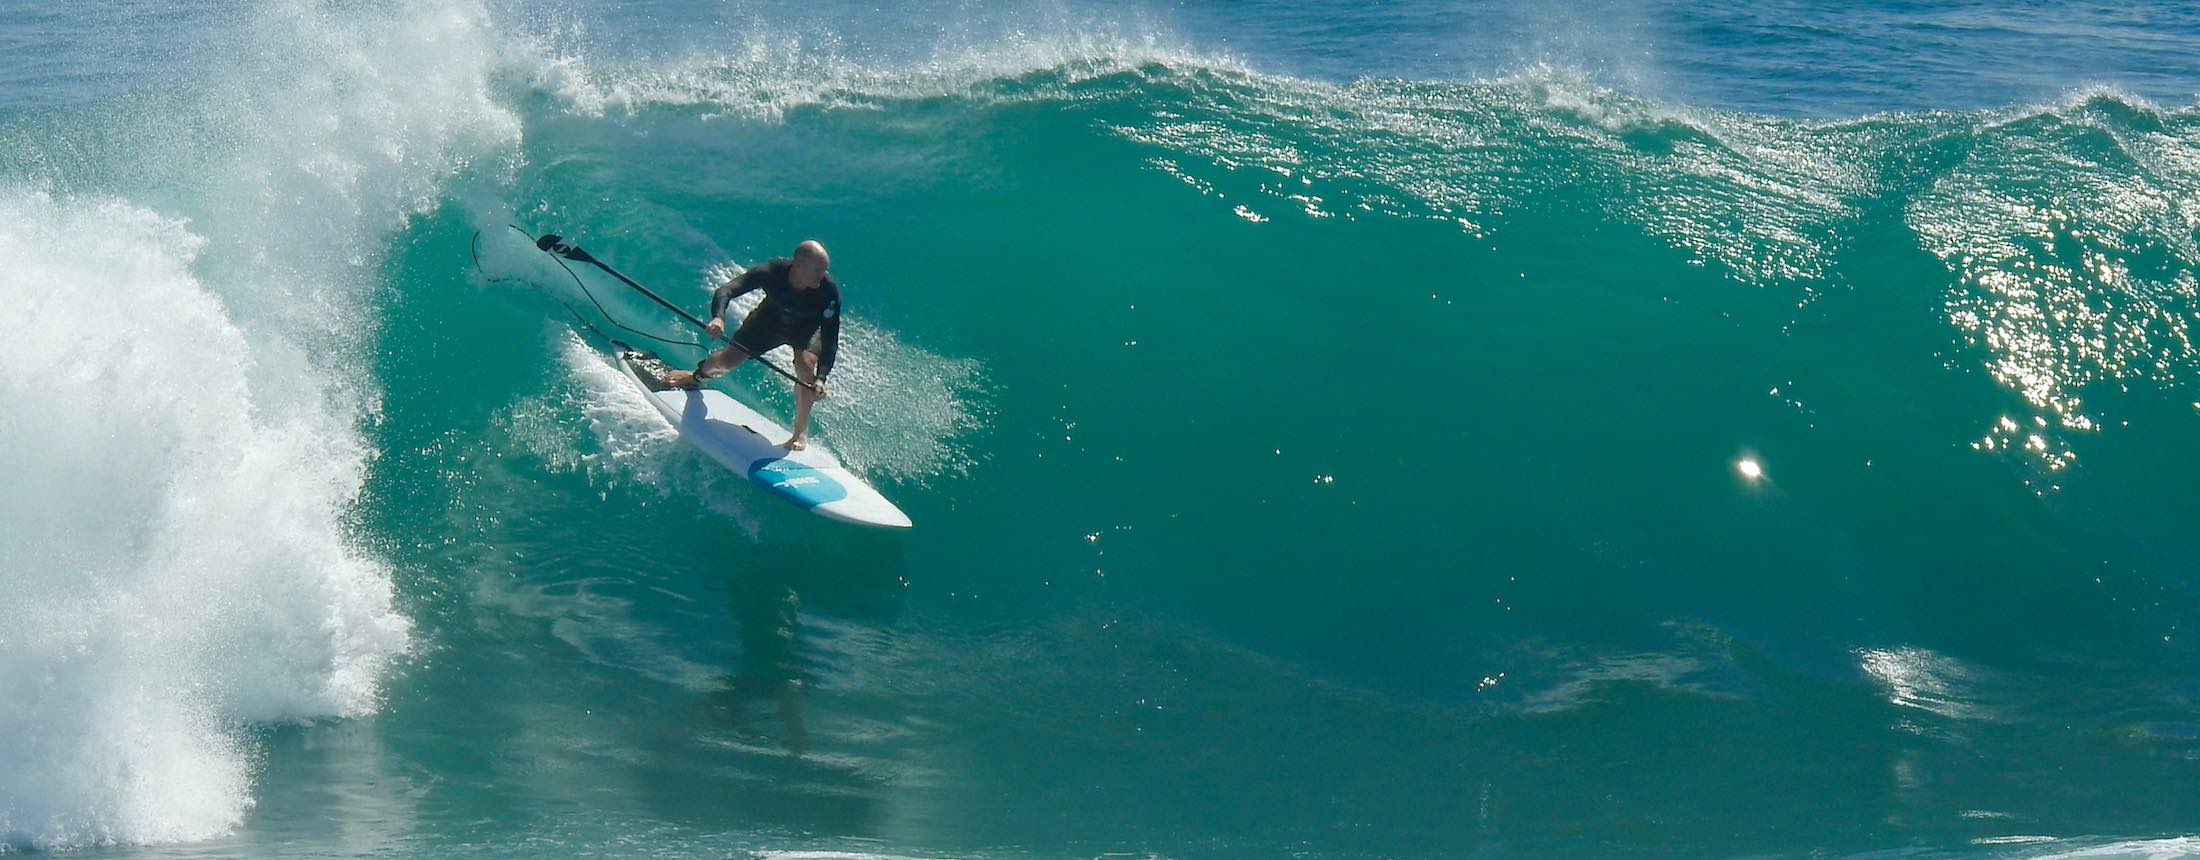 stand up surf shop scott mckercher surf smik big wave